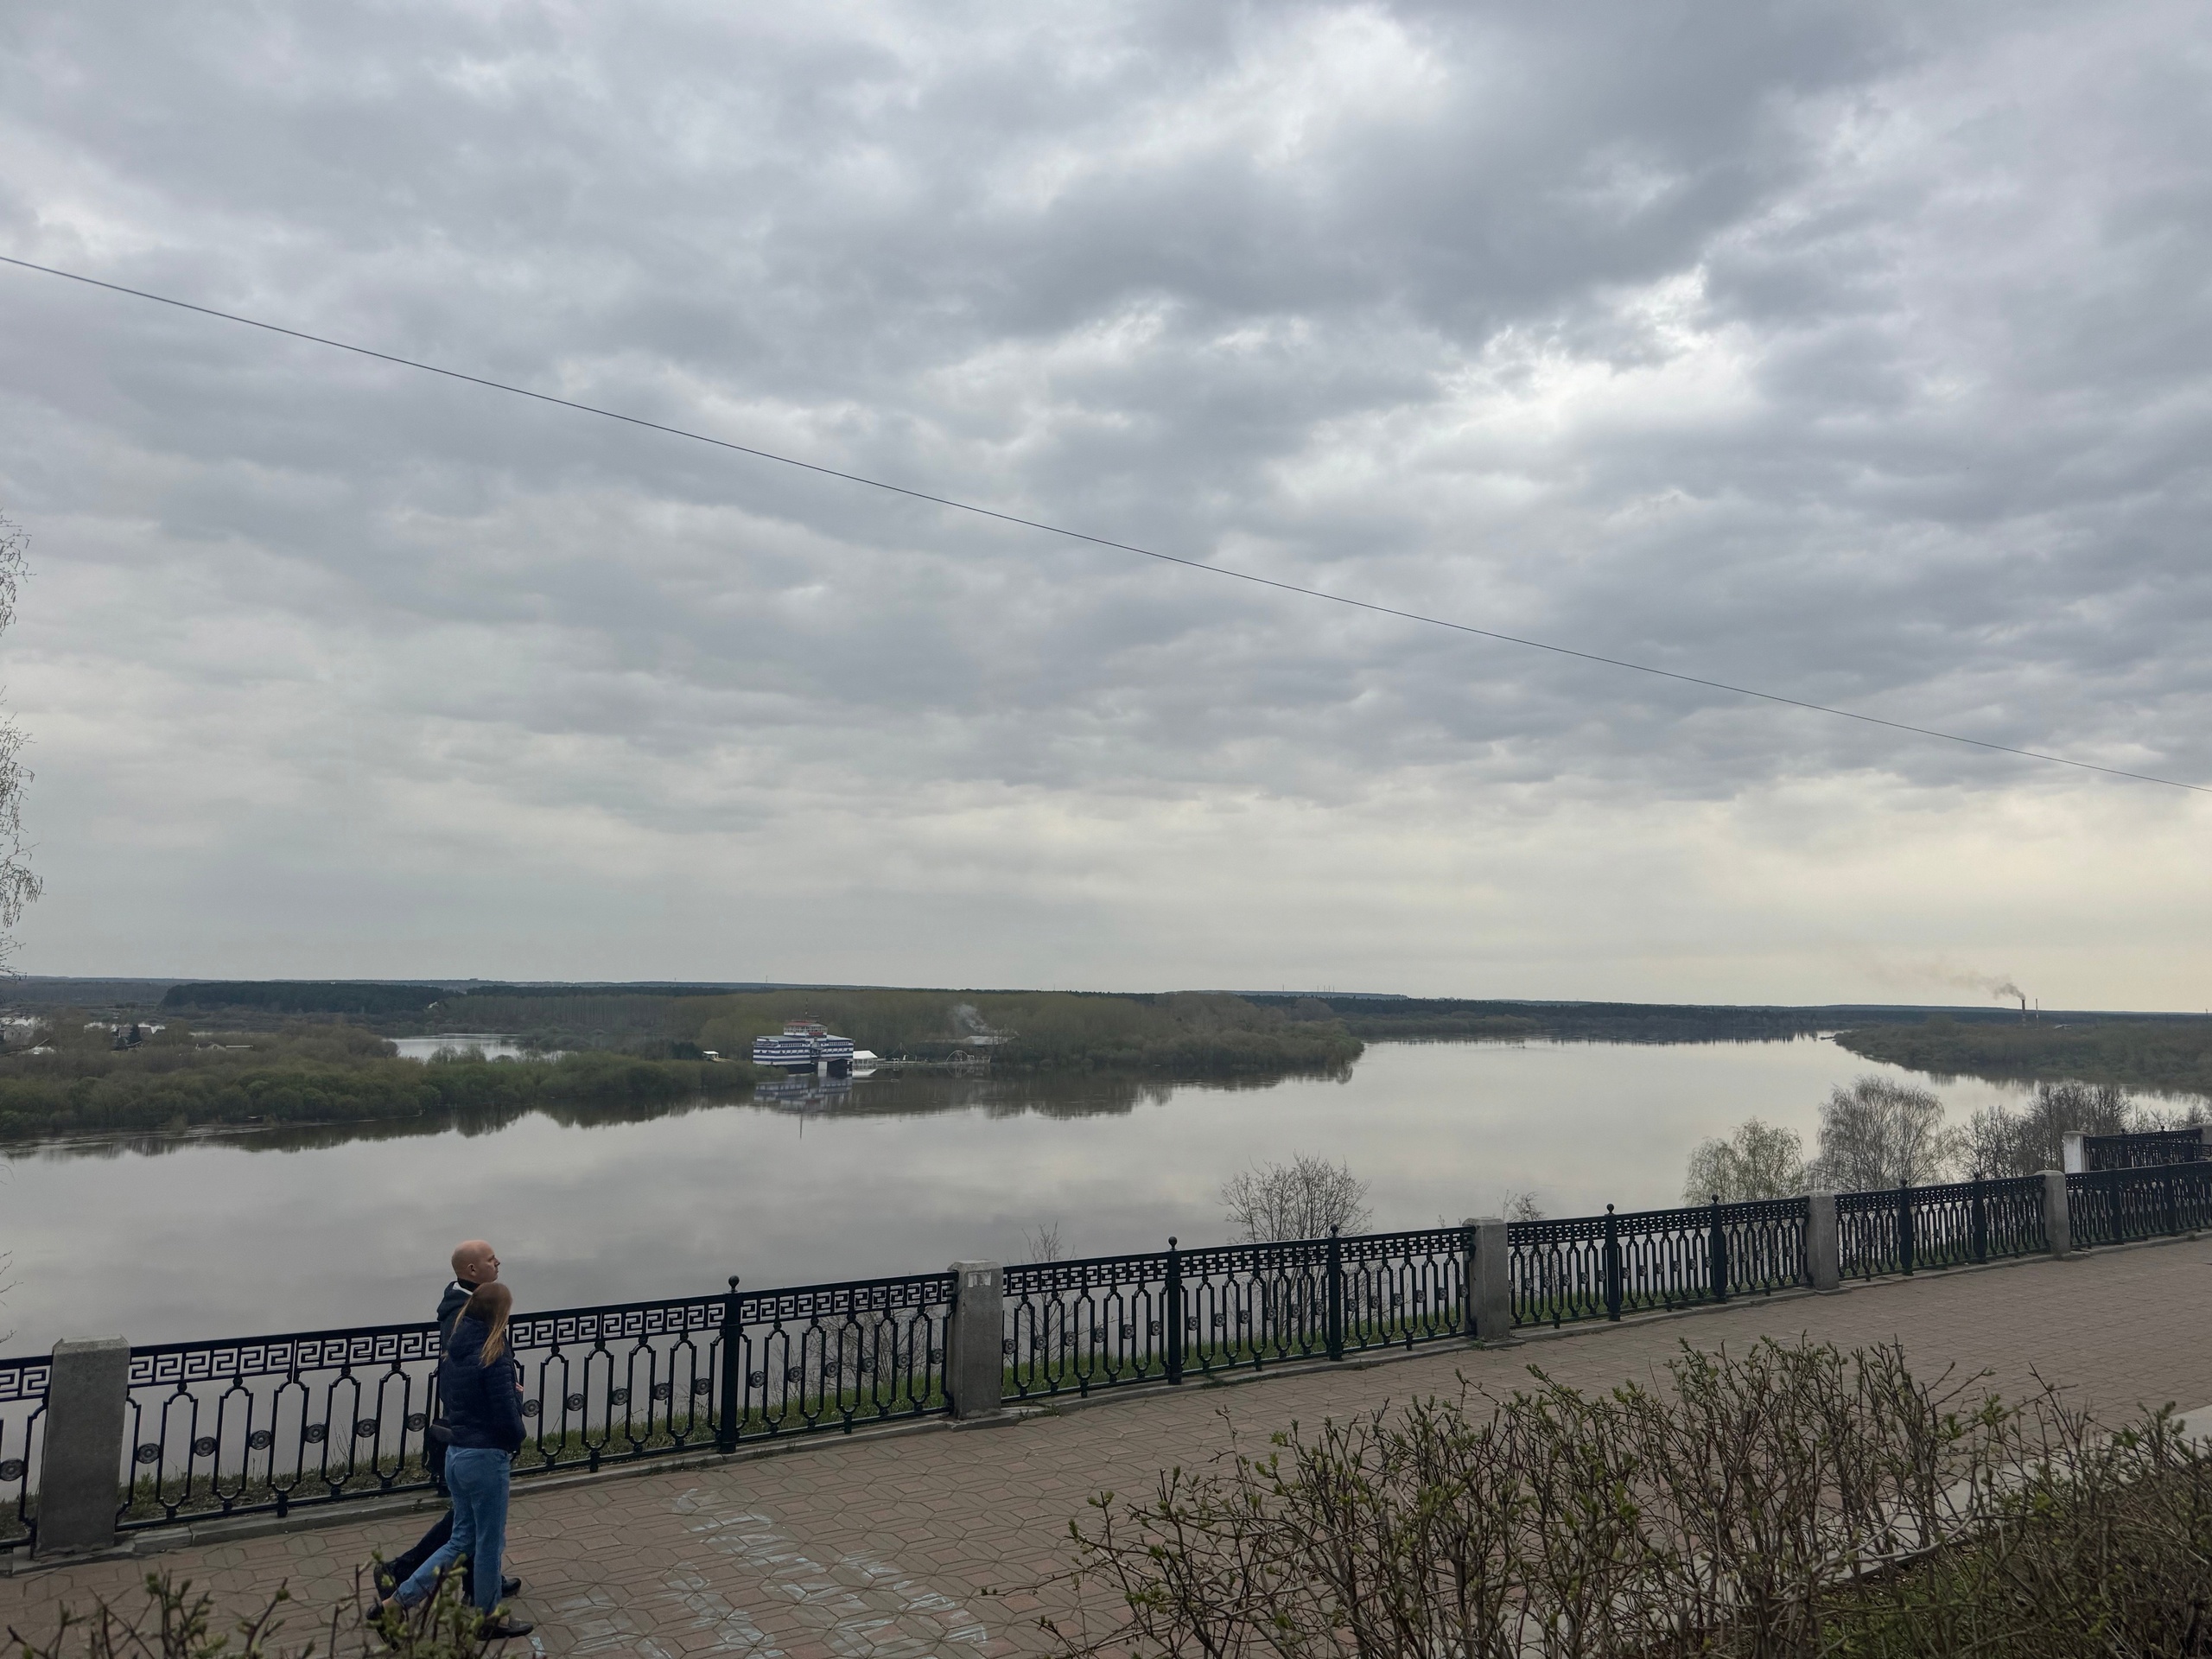 До минус 5 ночью: синоптики прогнозируют заморозки в Кирове в ближайшие дни